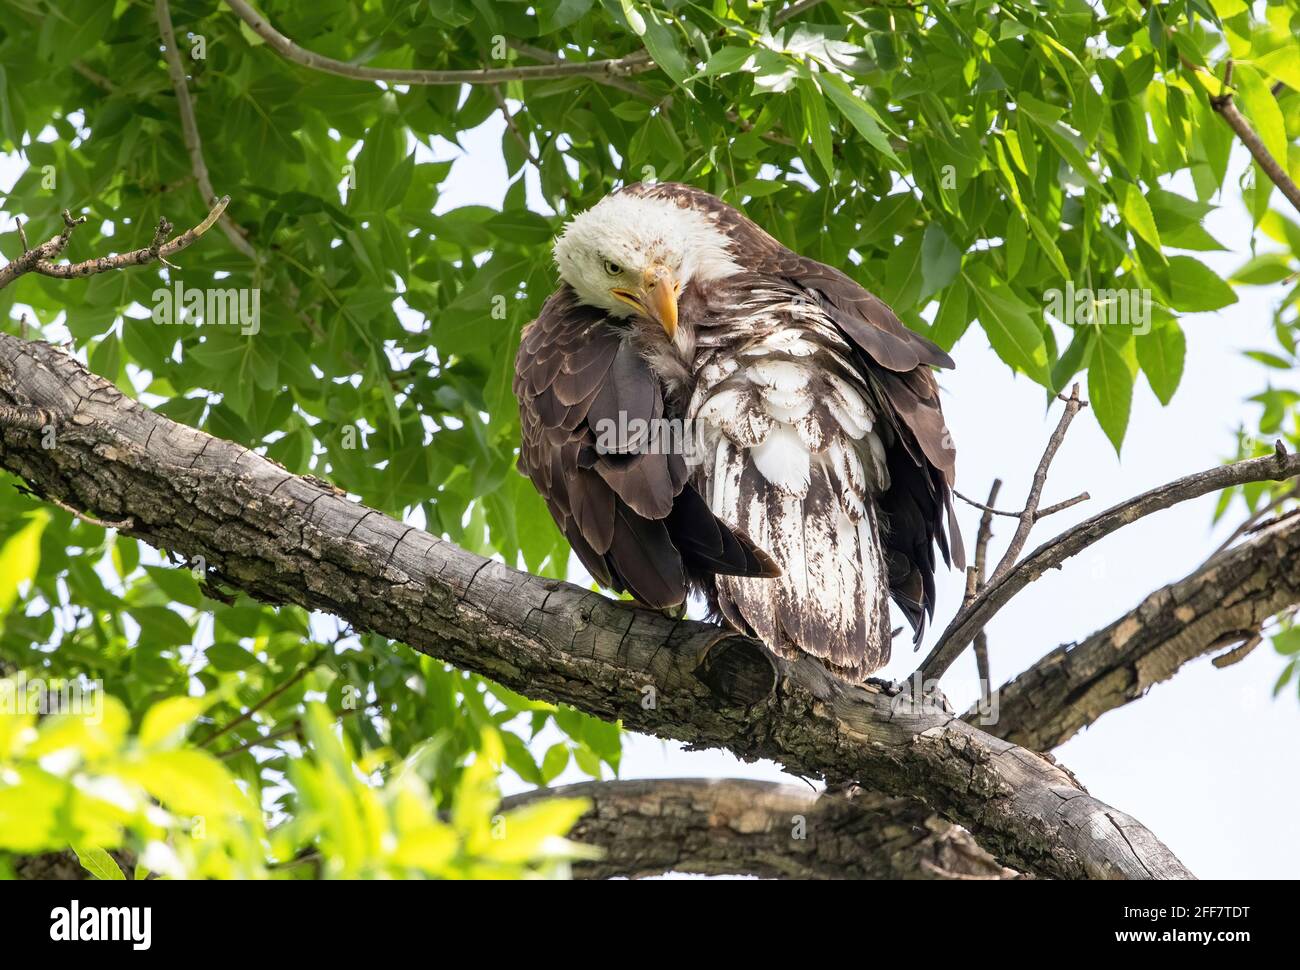 Nahaufnahme eines jungen Adlers, der sich auf der Pflege befindet und immer noch melierte Federn zeigt, während er unter einem Baldachin aus grünen Frühlingsblättern thront. Stockfoto